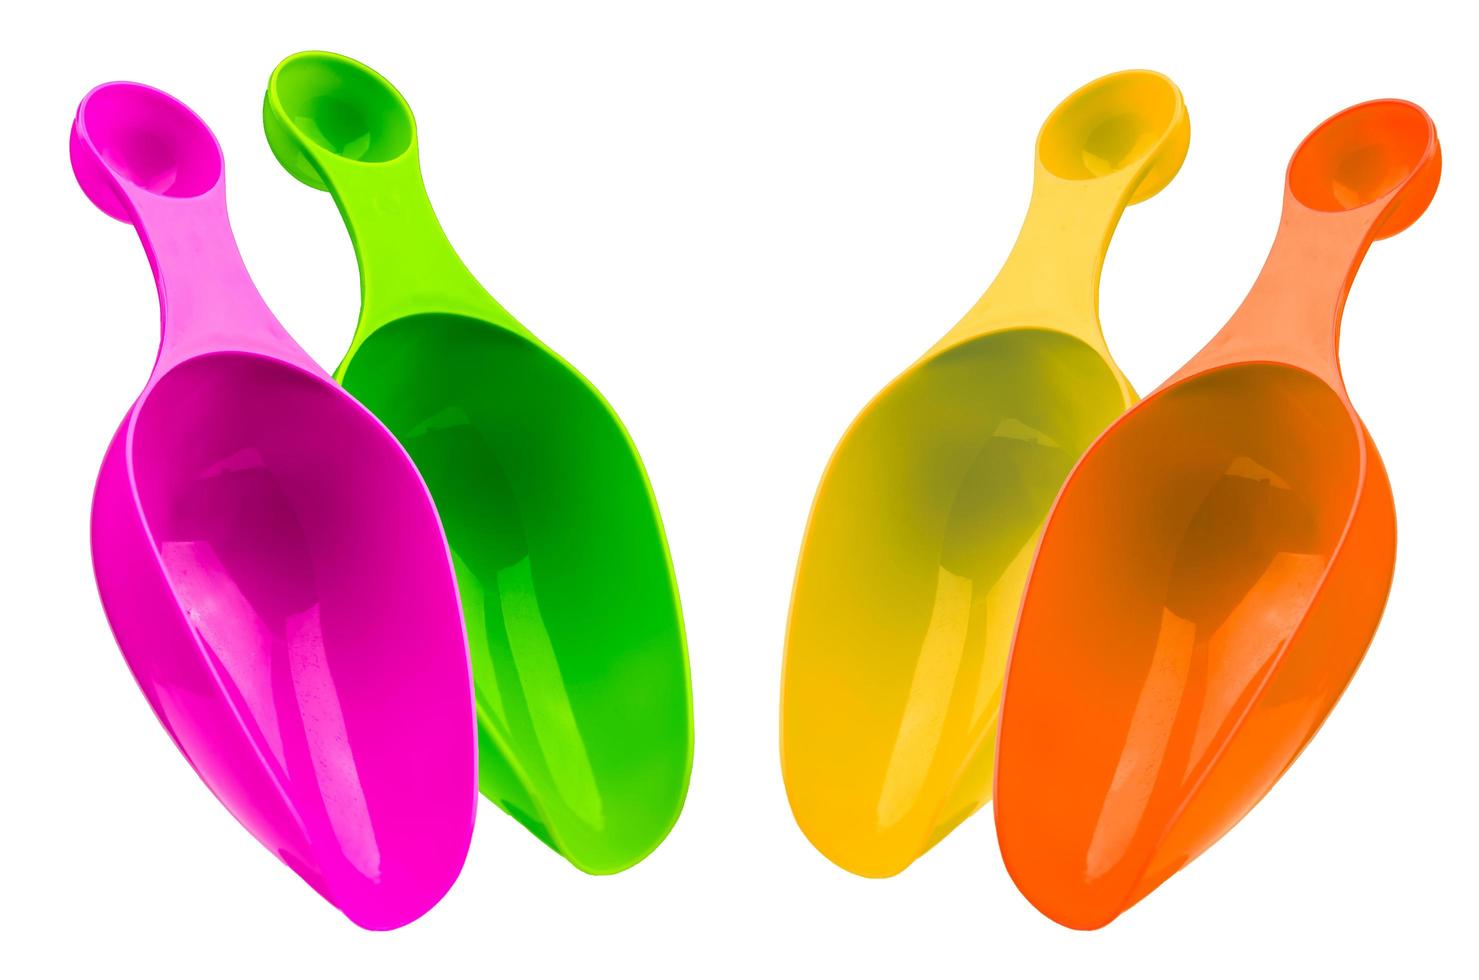 juego de cuchara dosificadora de plástico de colores aislada en fondo blanco con sombra. cuchara medidora de plástico verde, rosa, amarillo y naranja. foto